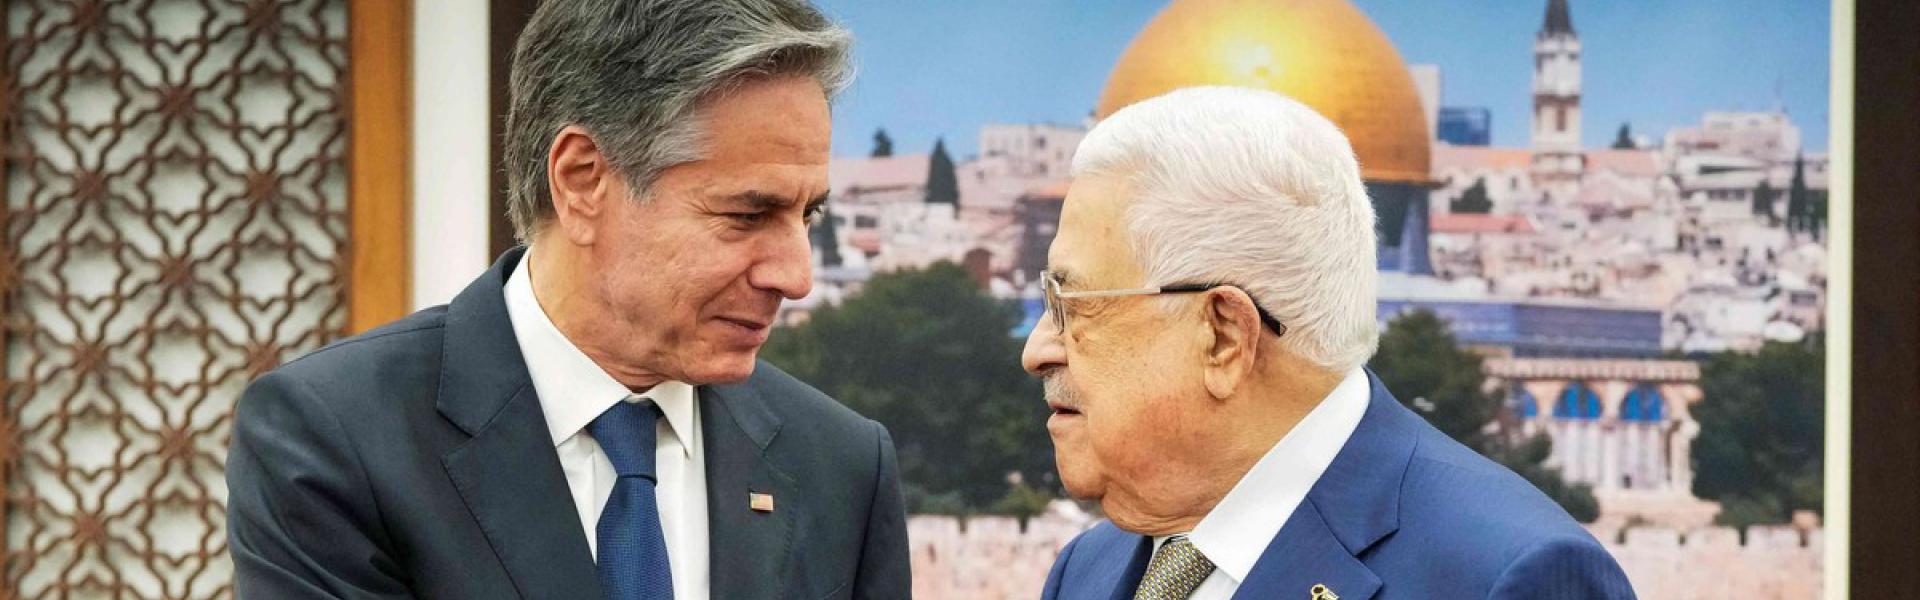 الرئيس الفلسطيني يتهم الأميركيين يالتواطئ في تجويع الفلسطينيين